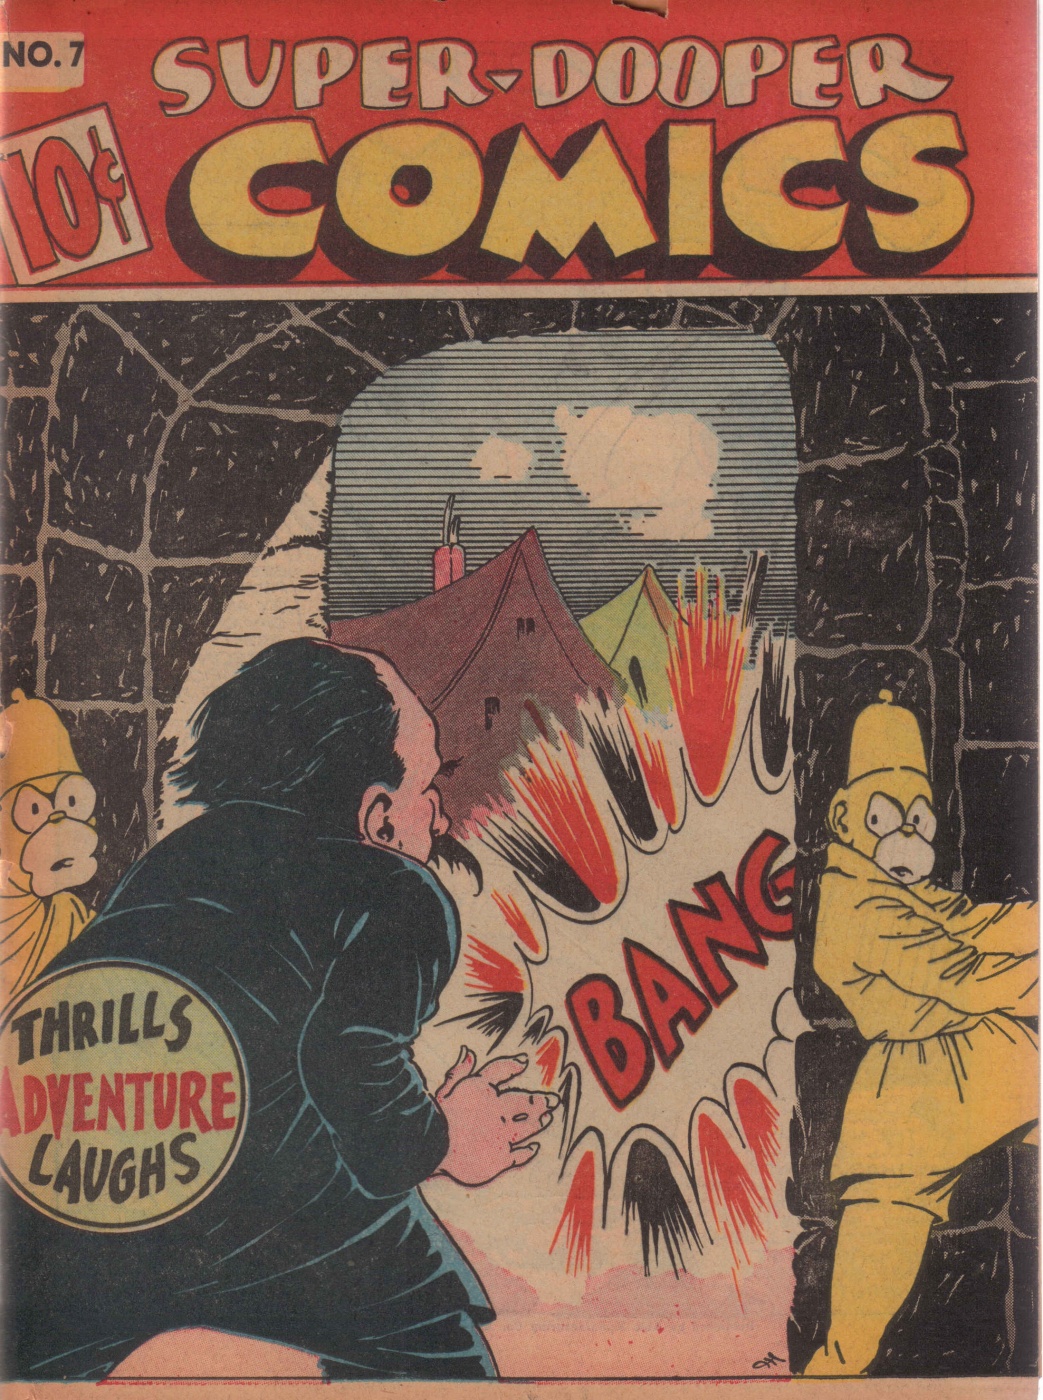 Super Dooper Funny Comics (1)